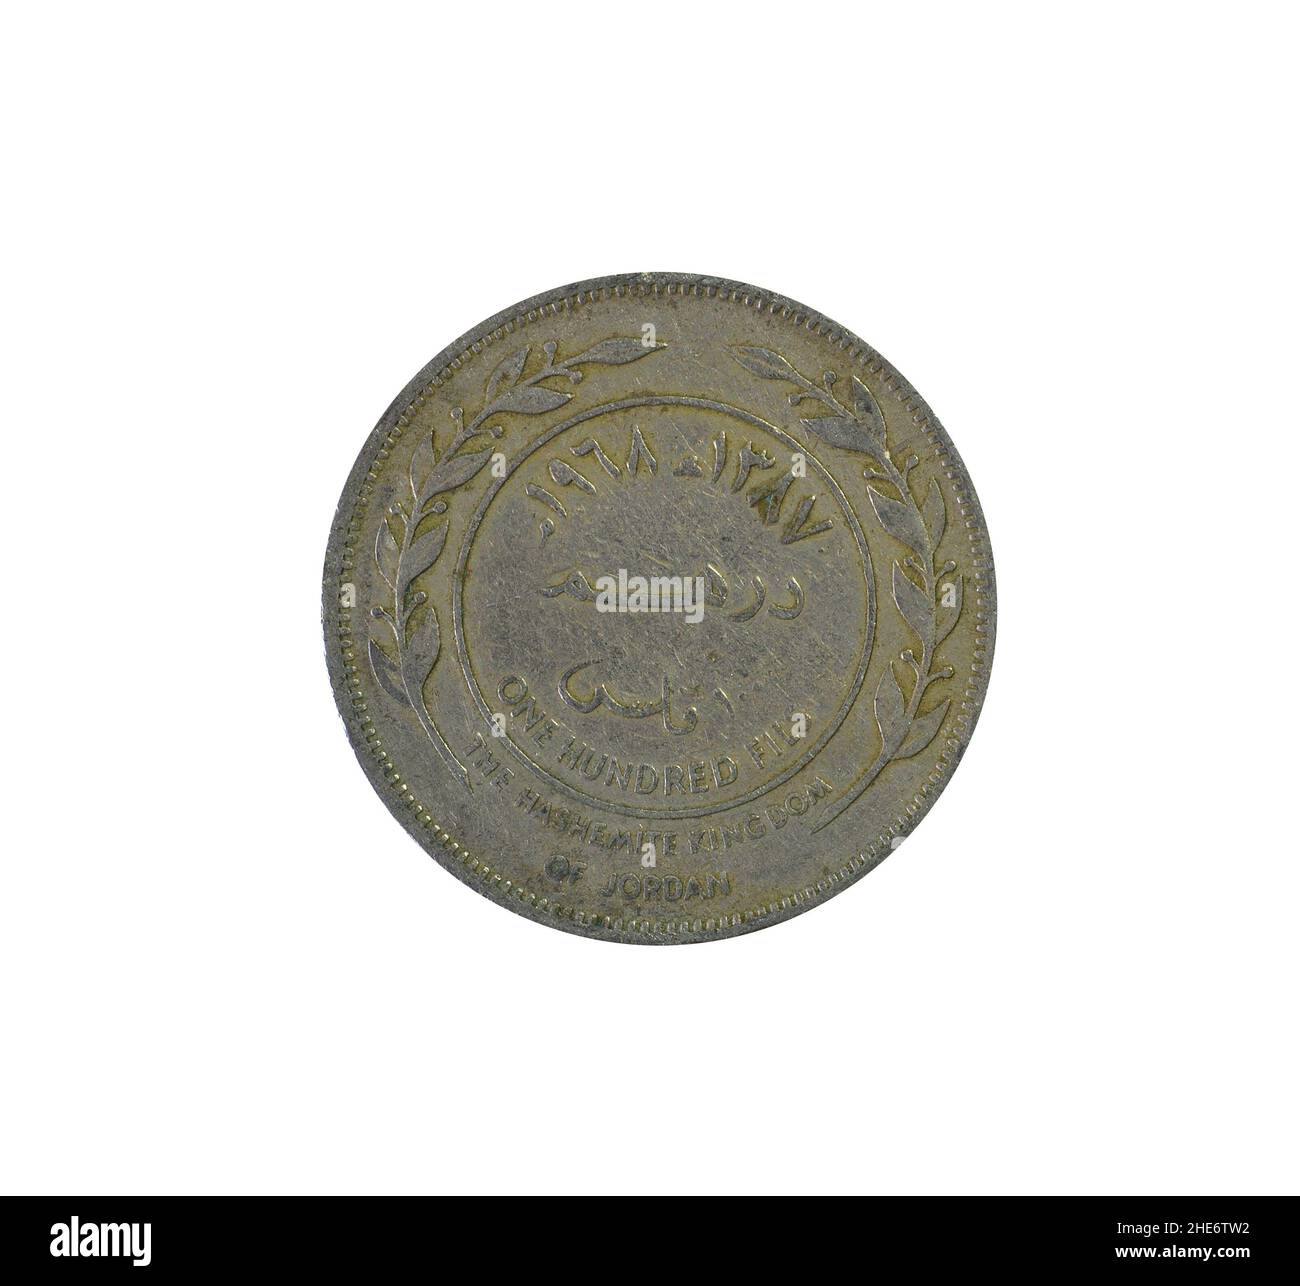 Fronte di 100 riempe moneta fatta da Giordania, che mostra valore e specchiati rami con foglie Foto Stock